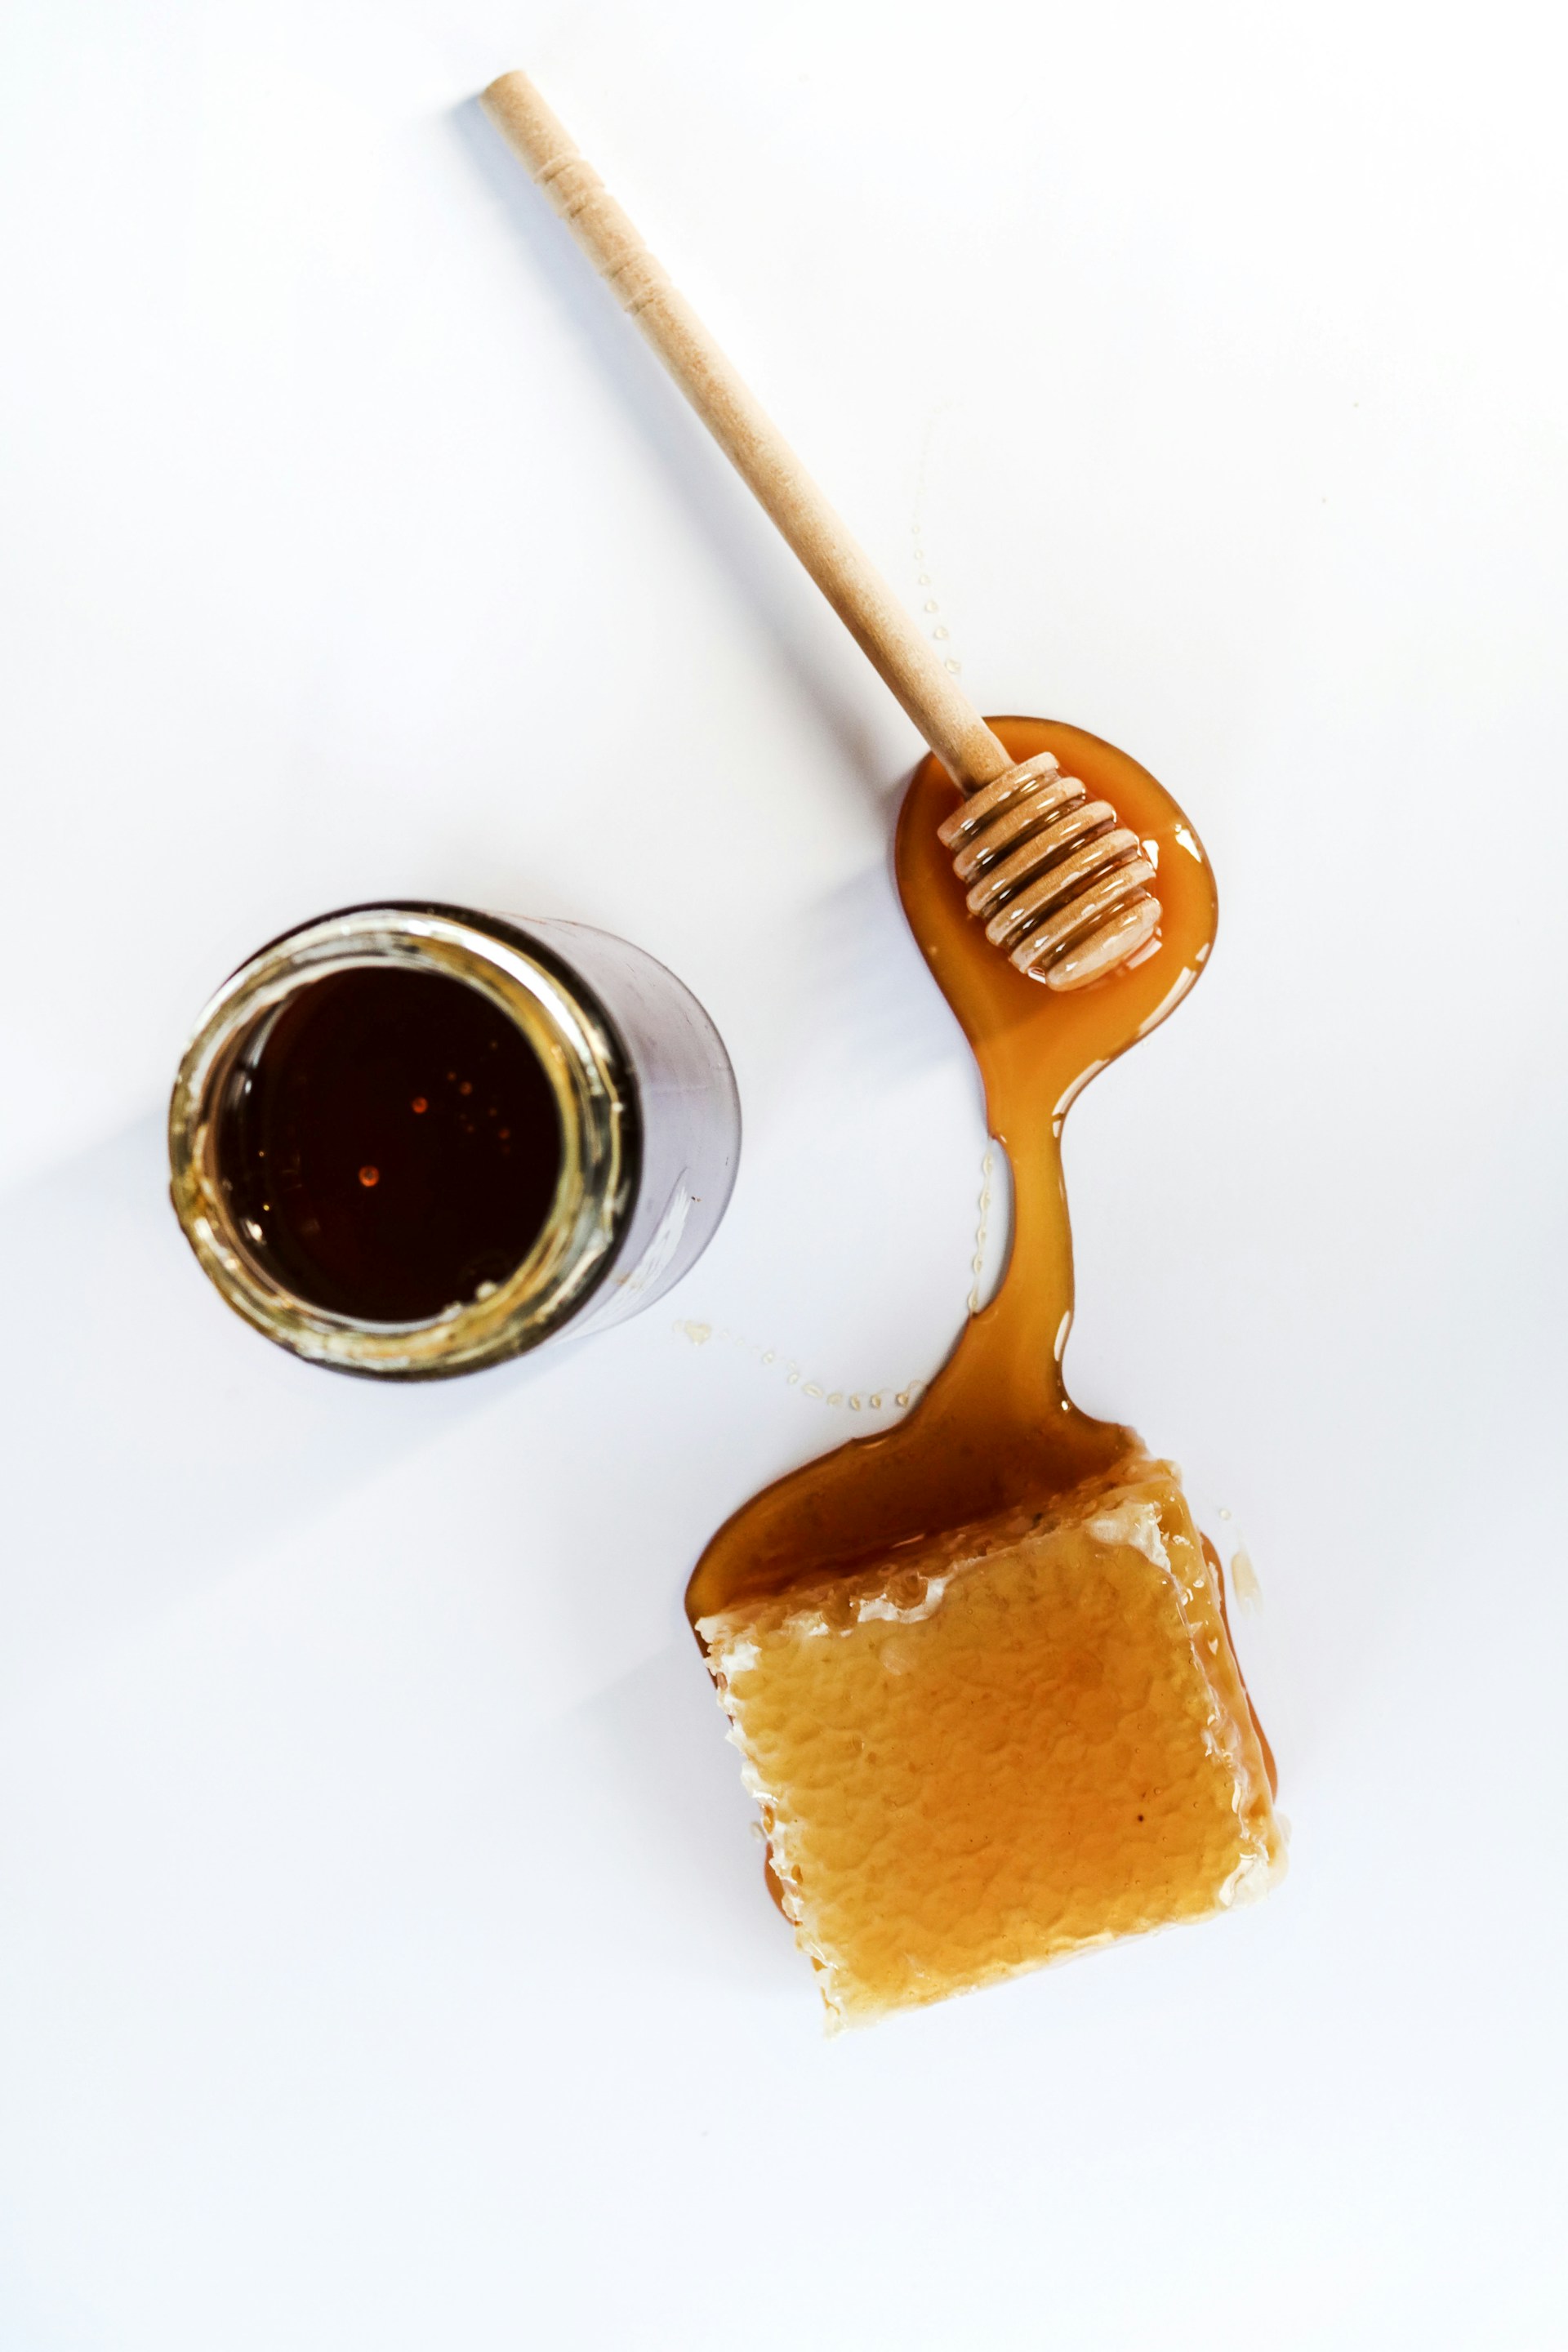 Το πανεύκολο tip για να καταλάβεις αν το μέλι που αγόρασες είναι νοθευμένο